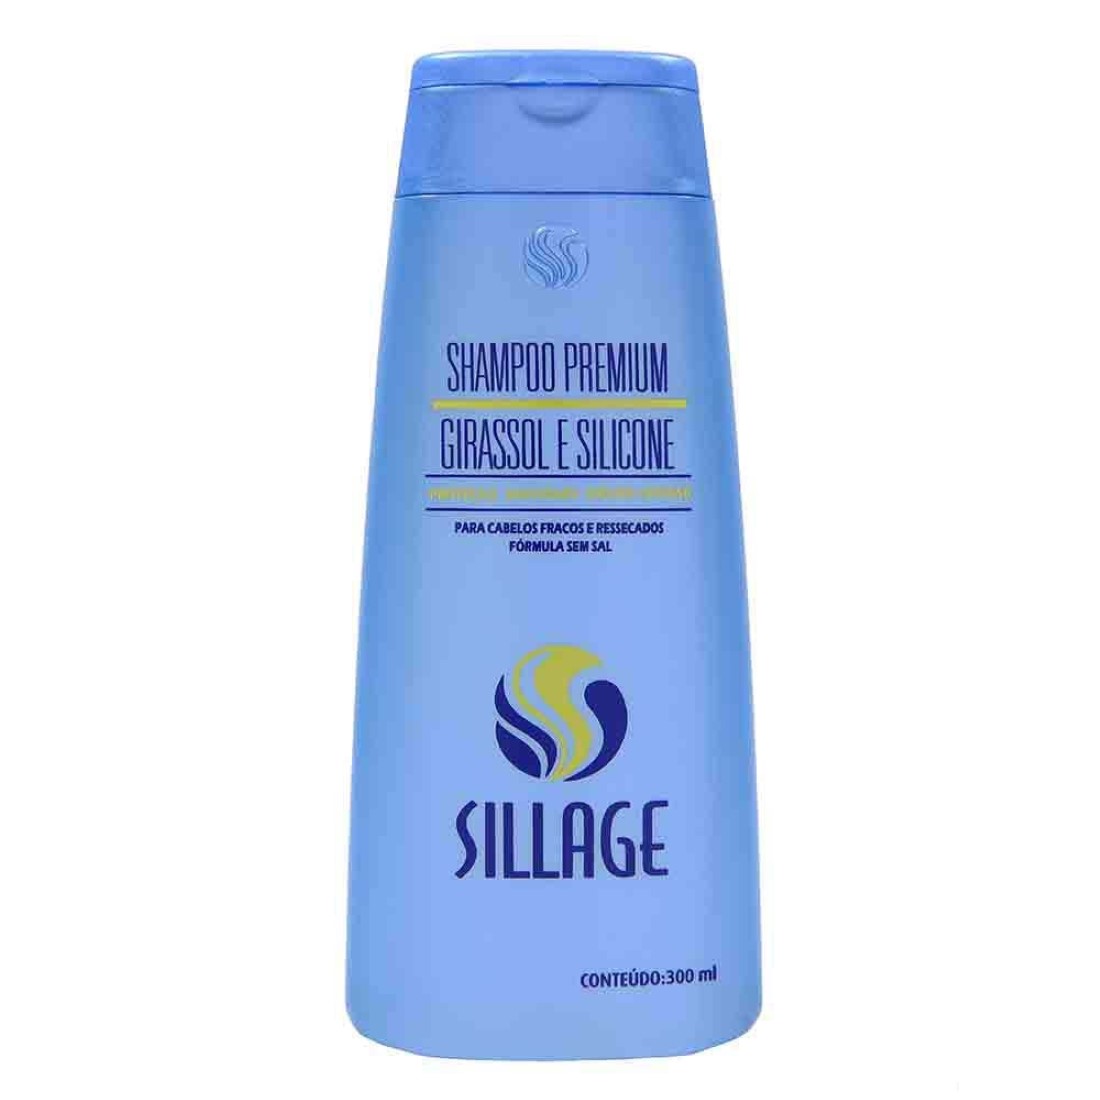 Shampoo Premium Girassol e Silicone 300ml - Sillage